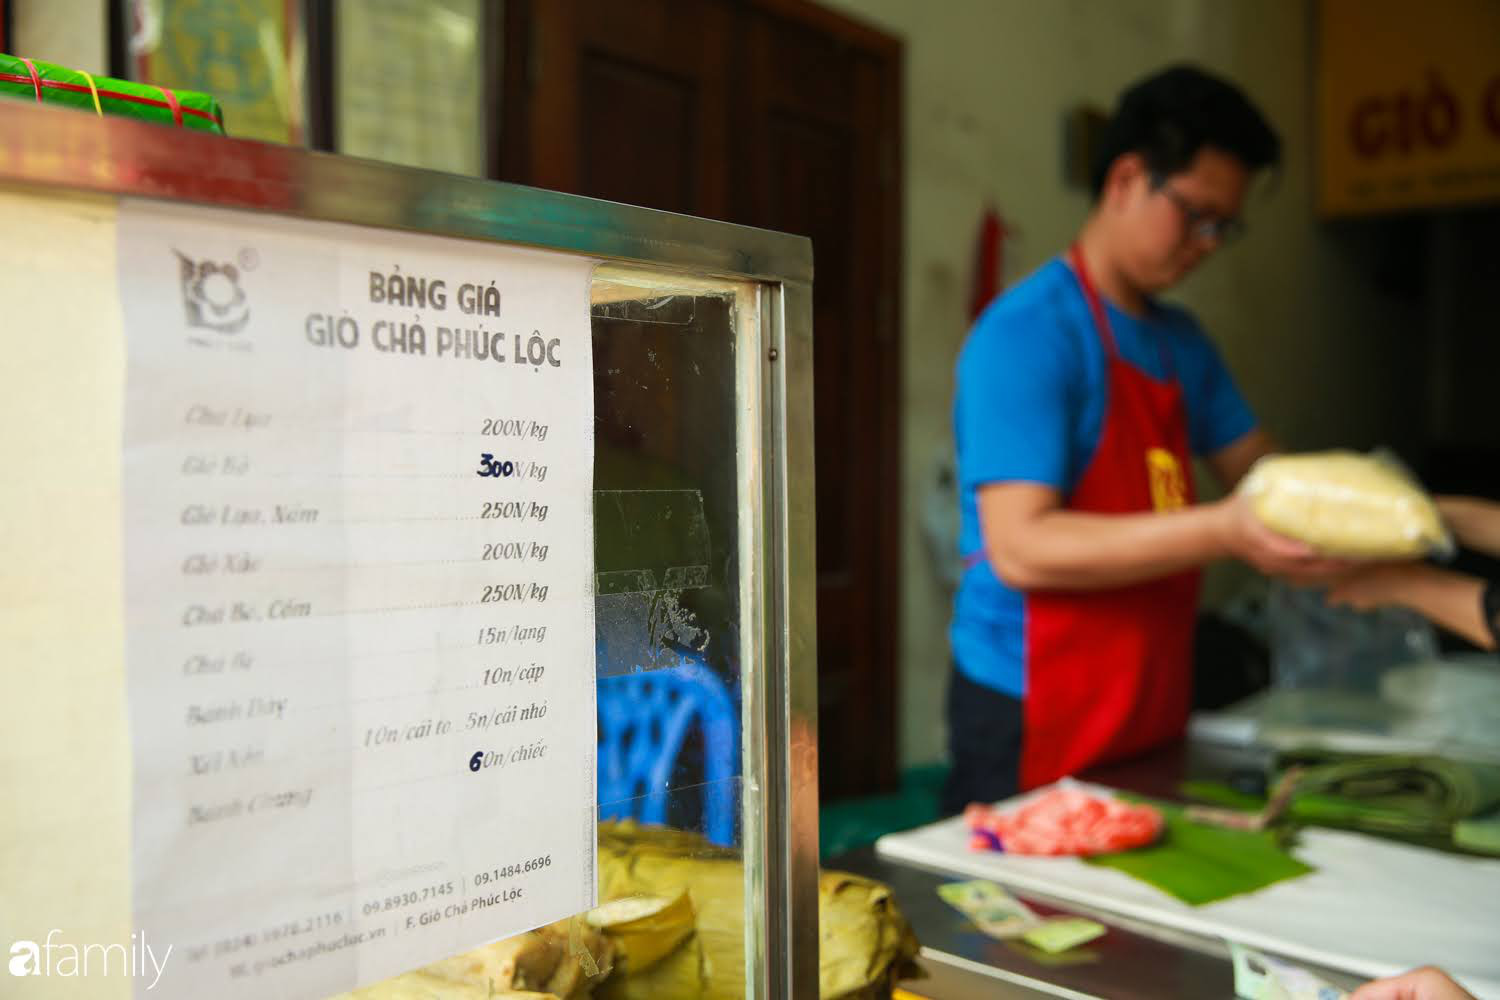 Không khí tấp nập ngày Tết ở những hàng giò chả, bánh chưng gia truyền trên phố ở Hà Nội: Người mua xếp hàng đến lượt, kẻ bán không ngơi chân tay - Ảnh 9.